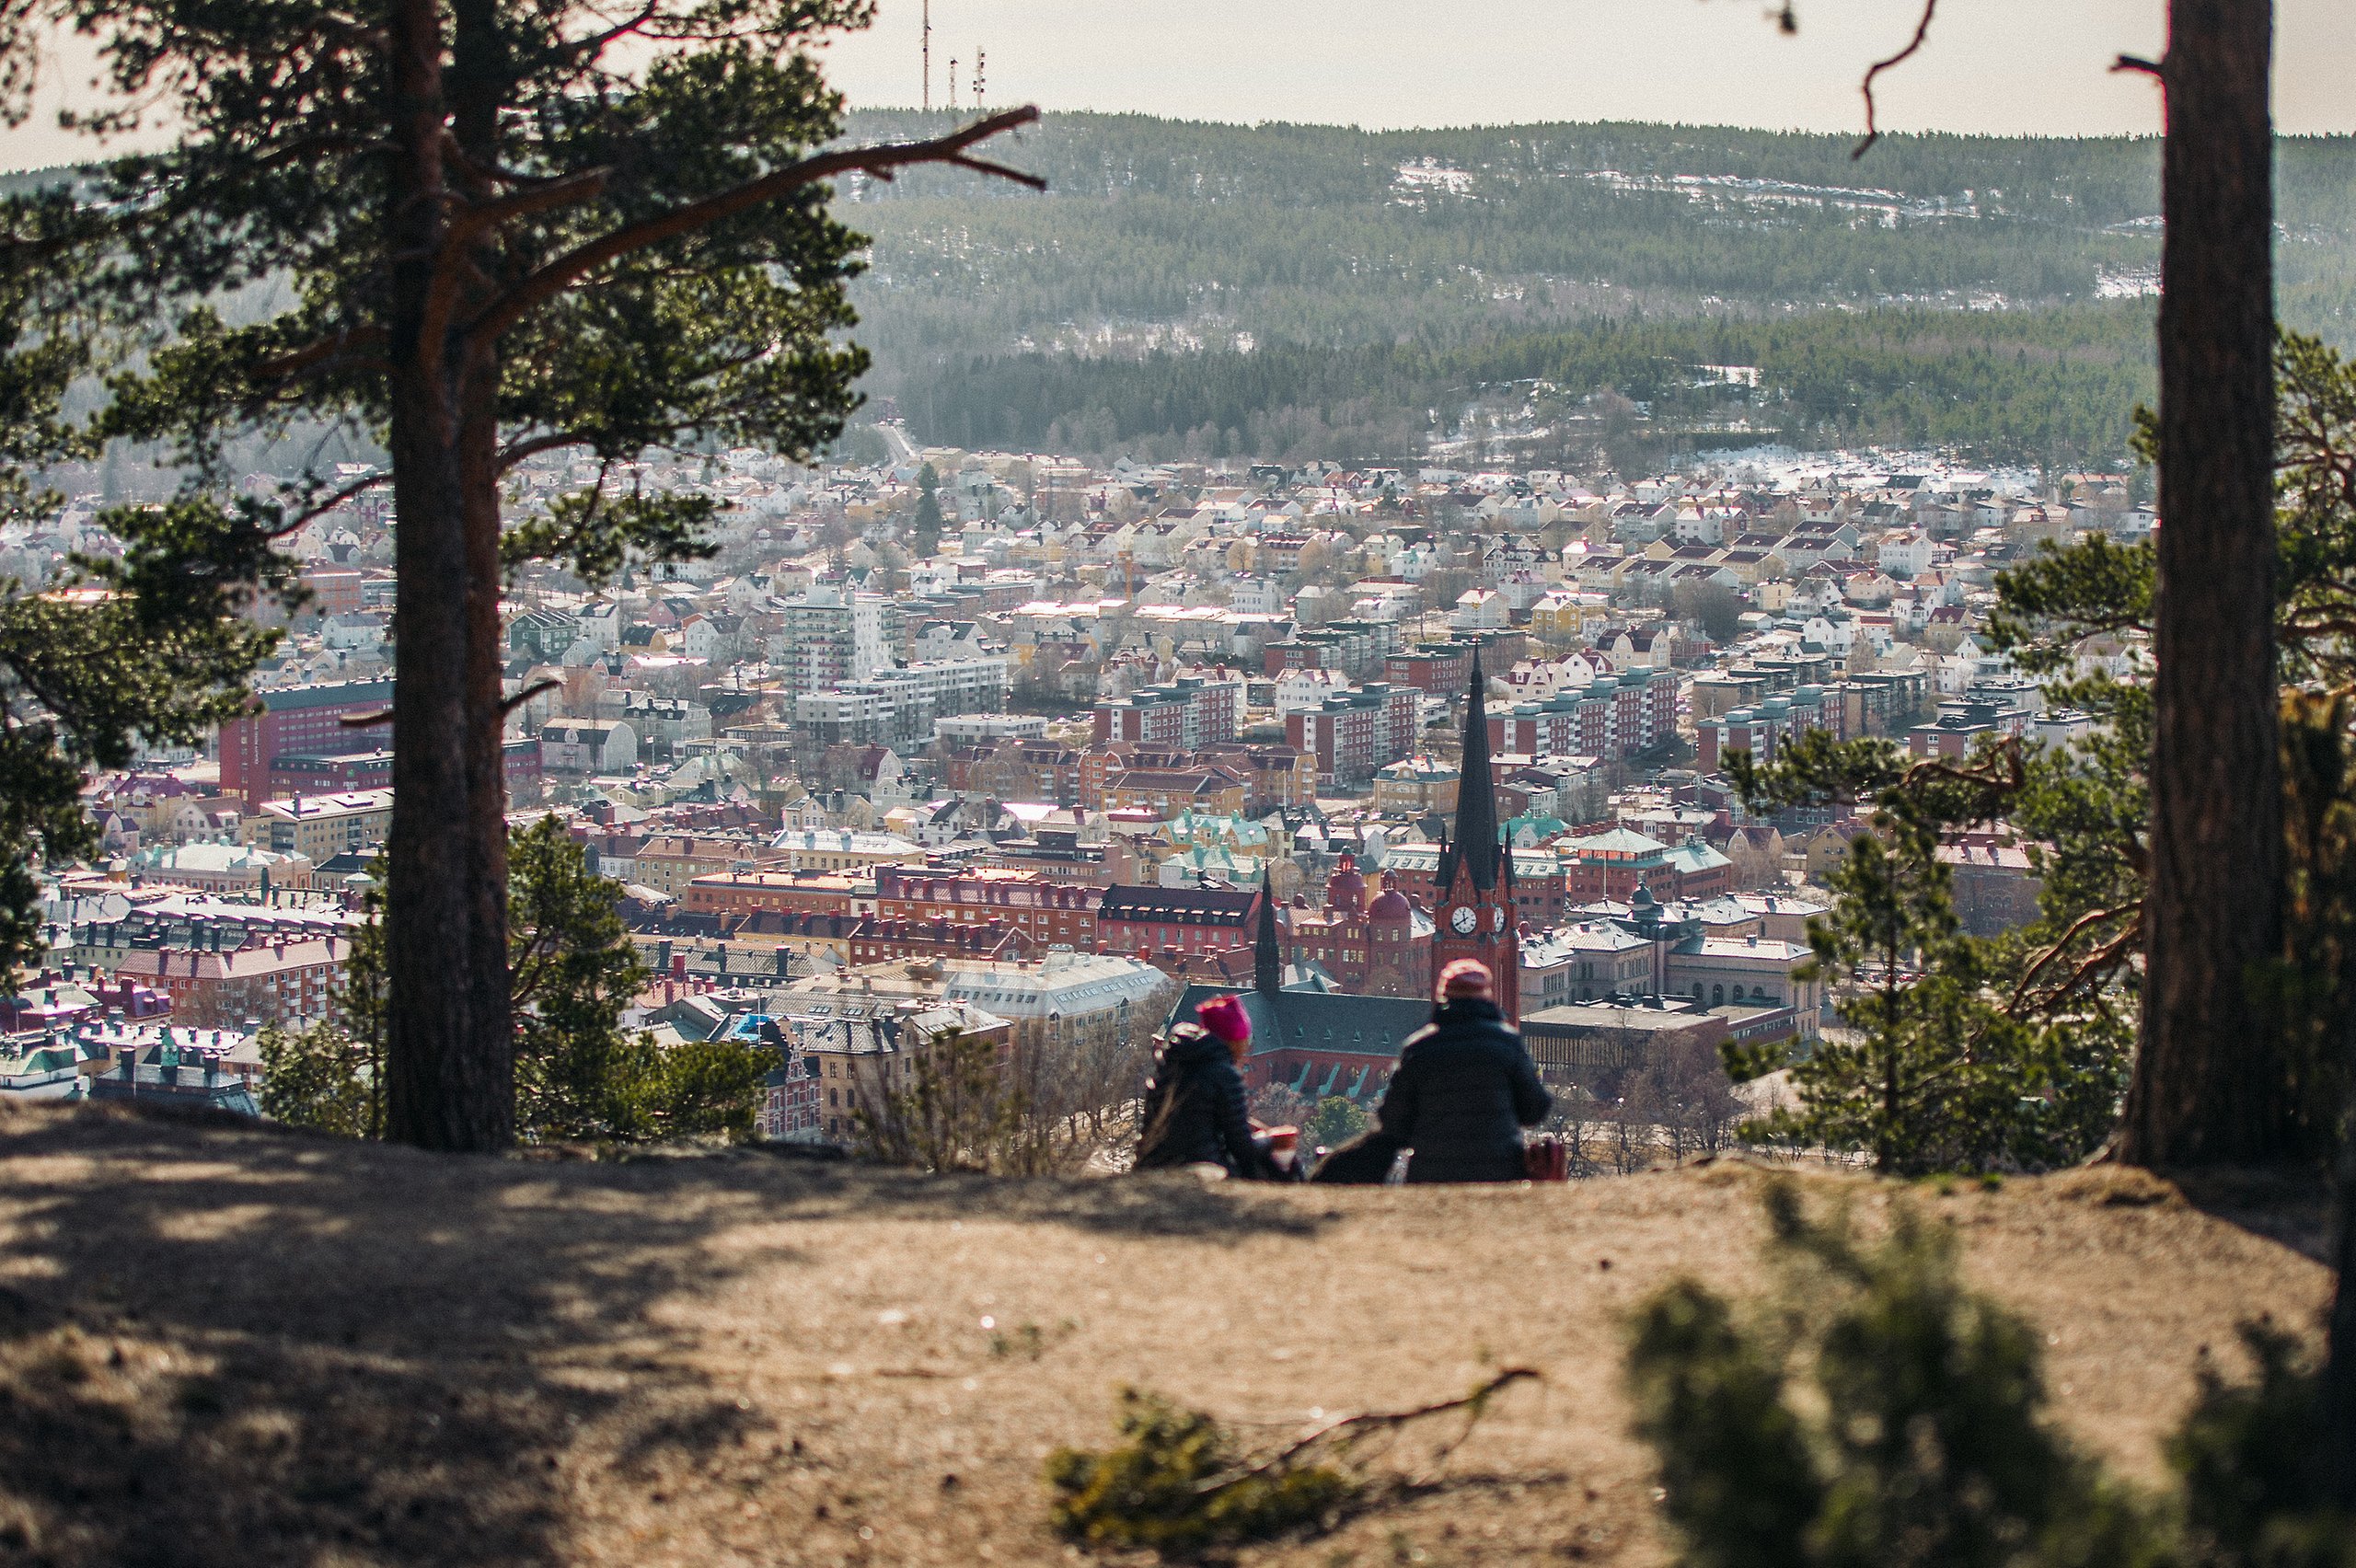 Fotografi av en vy över Sundsvalls stad. I förgrunden av bilden ser man ryggen av två personer som sitter och tittar ner på staden. 